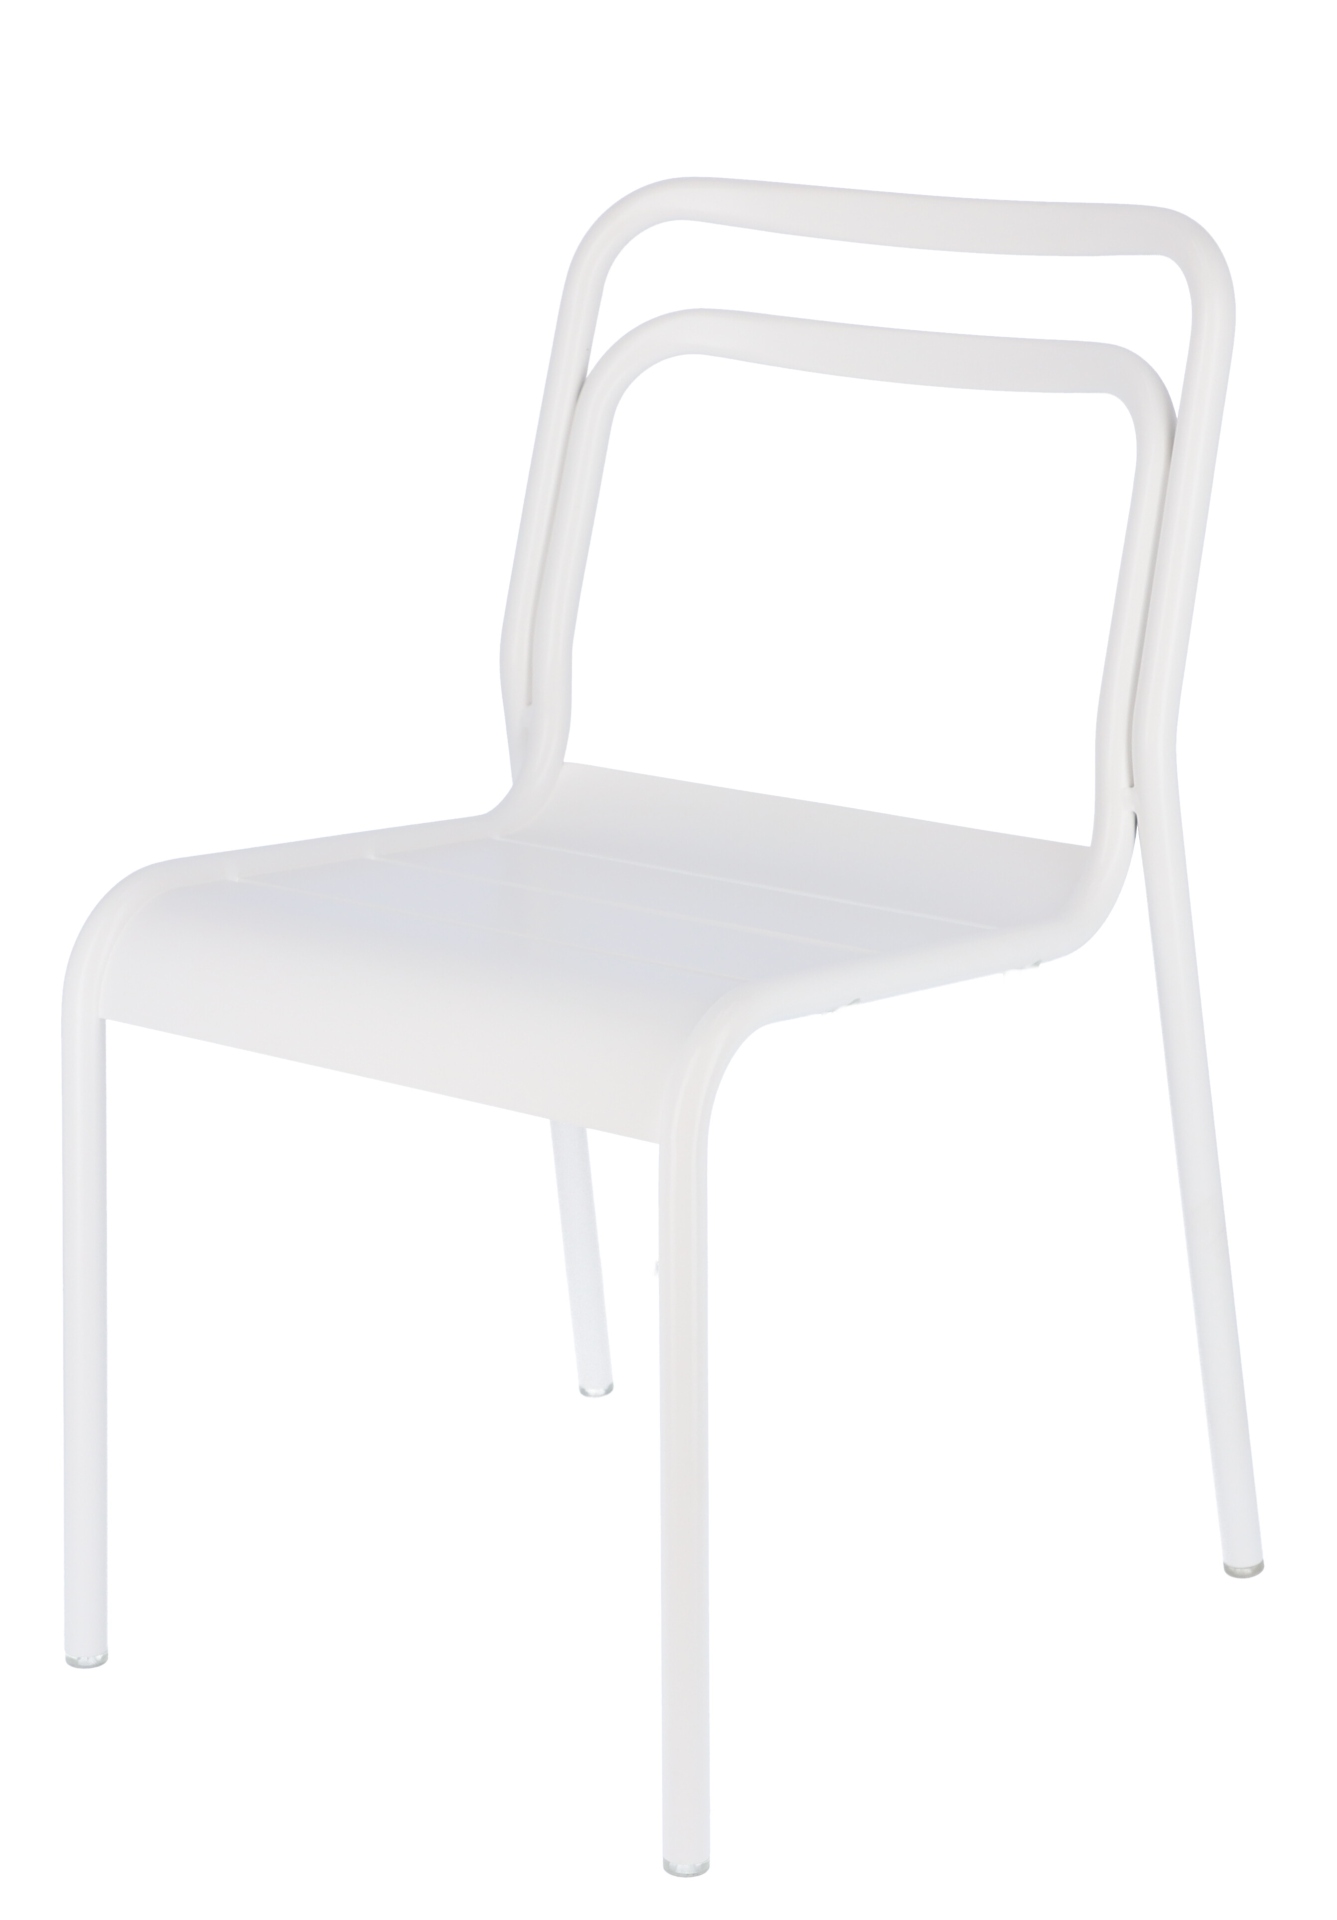 Der moderne Gartenstuhl Live wurde aus Aluminium hergestellt. Designet wurde er von der Marke Jan Kurtz. Die Farbe des Stuhls ist Weiß.